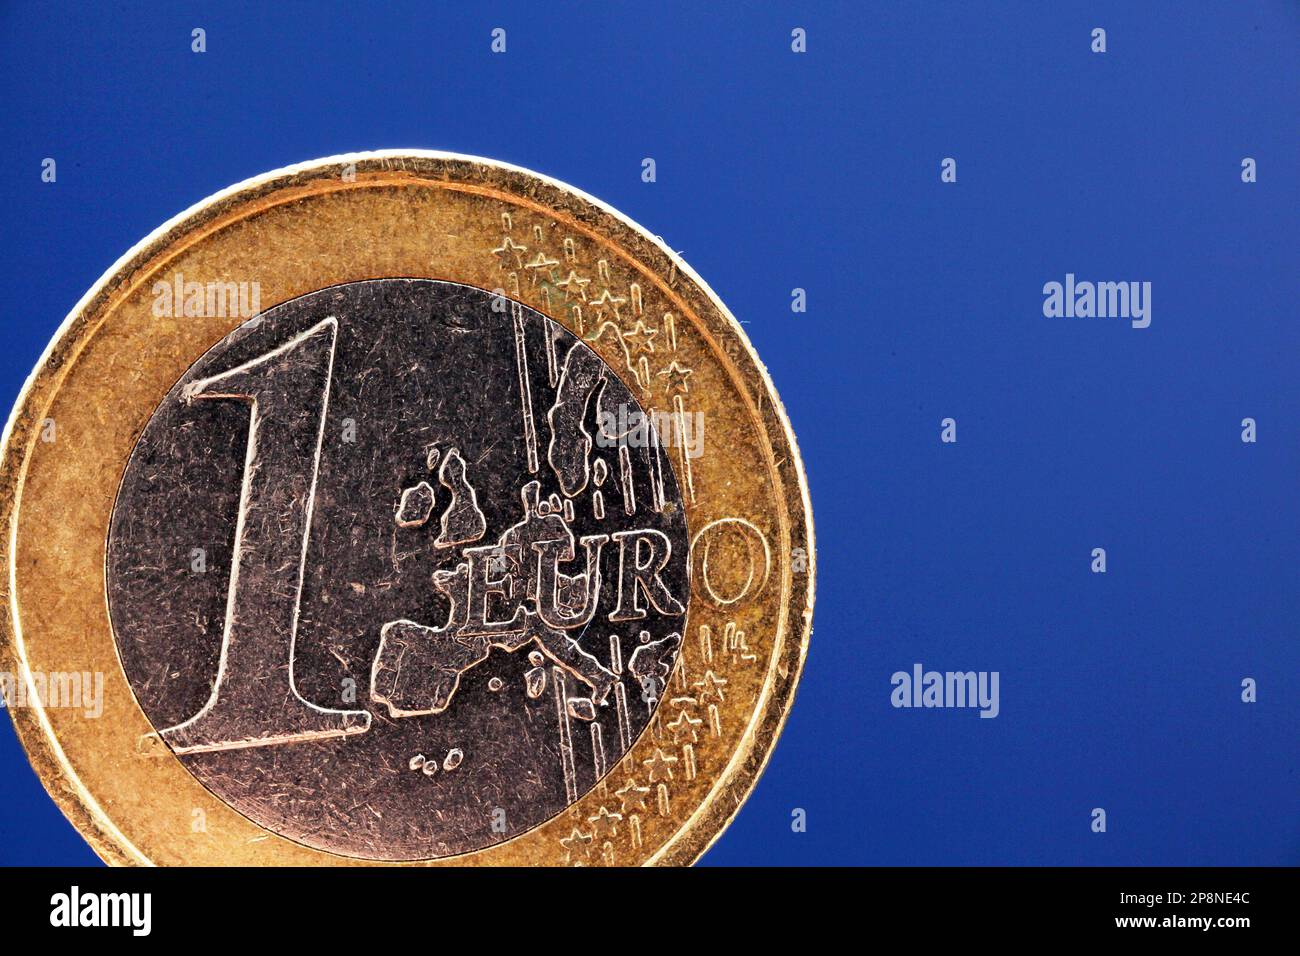 Hintergrund Mit Euro-Banknoten. 1 Euro Auf Dem Hintergrund Des Geldes. Eine  Euro-Münze. Ansicht Von Oben Lizenzfreie Fotos, Bilder und Stock  Fotografie. Image 143187514.